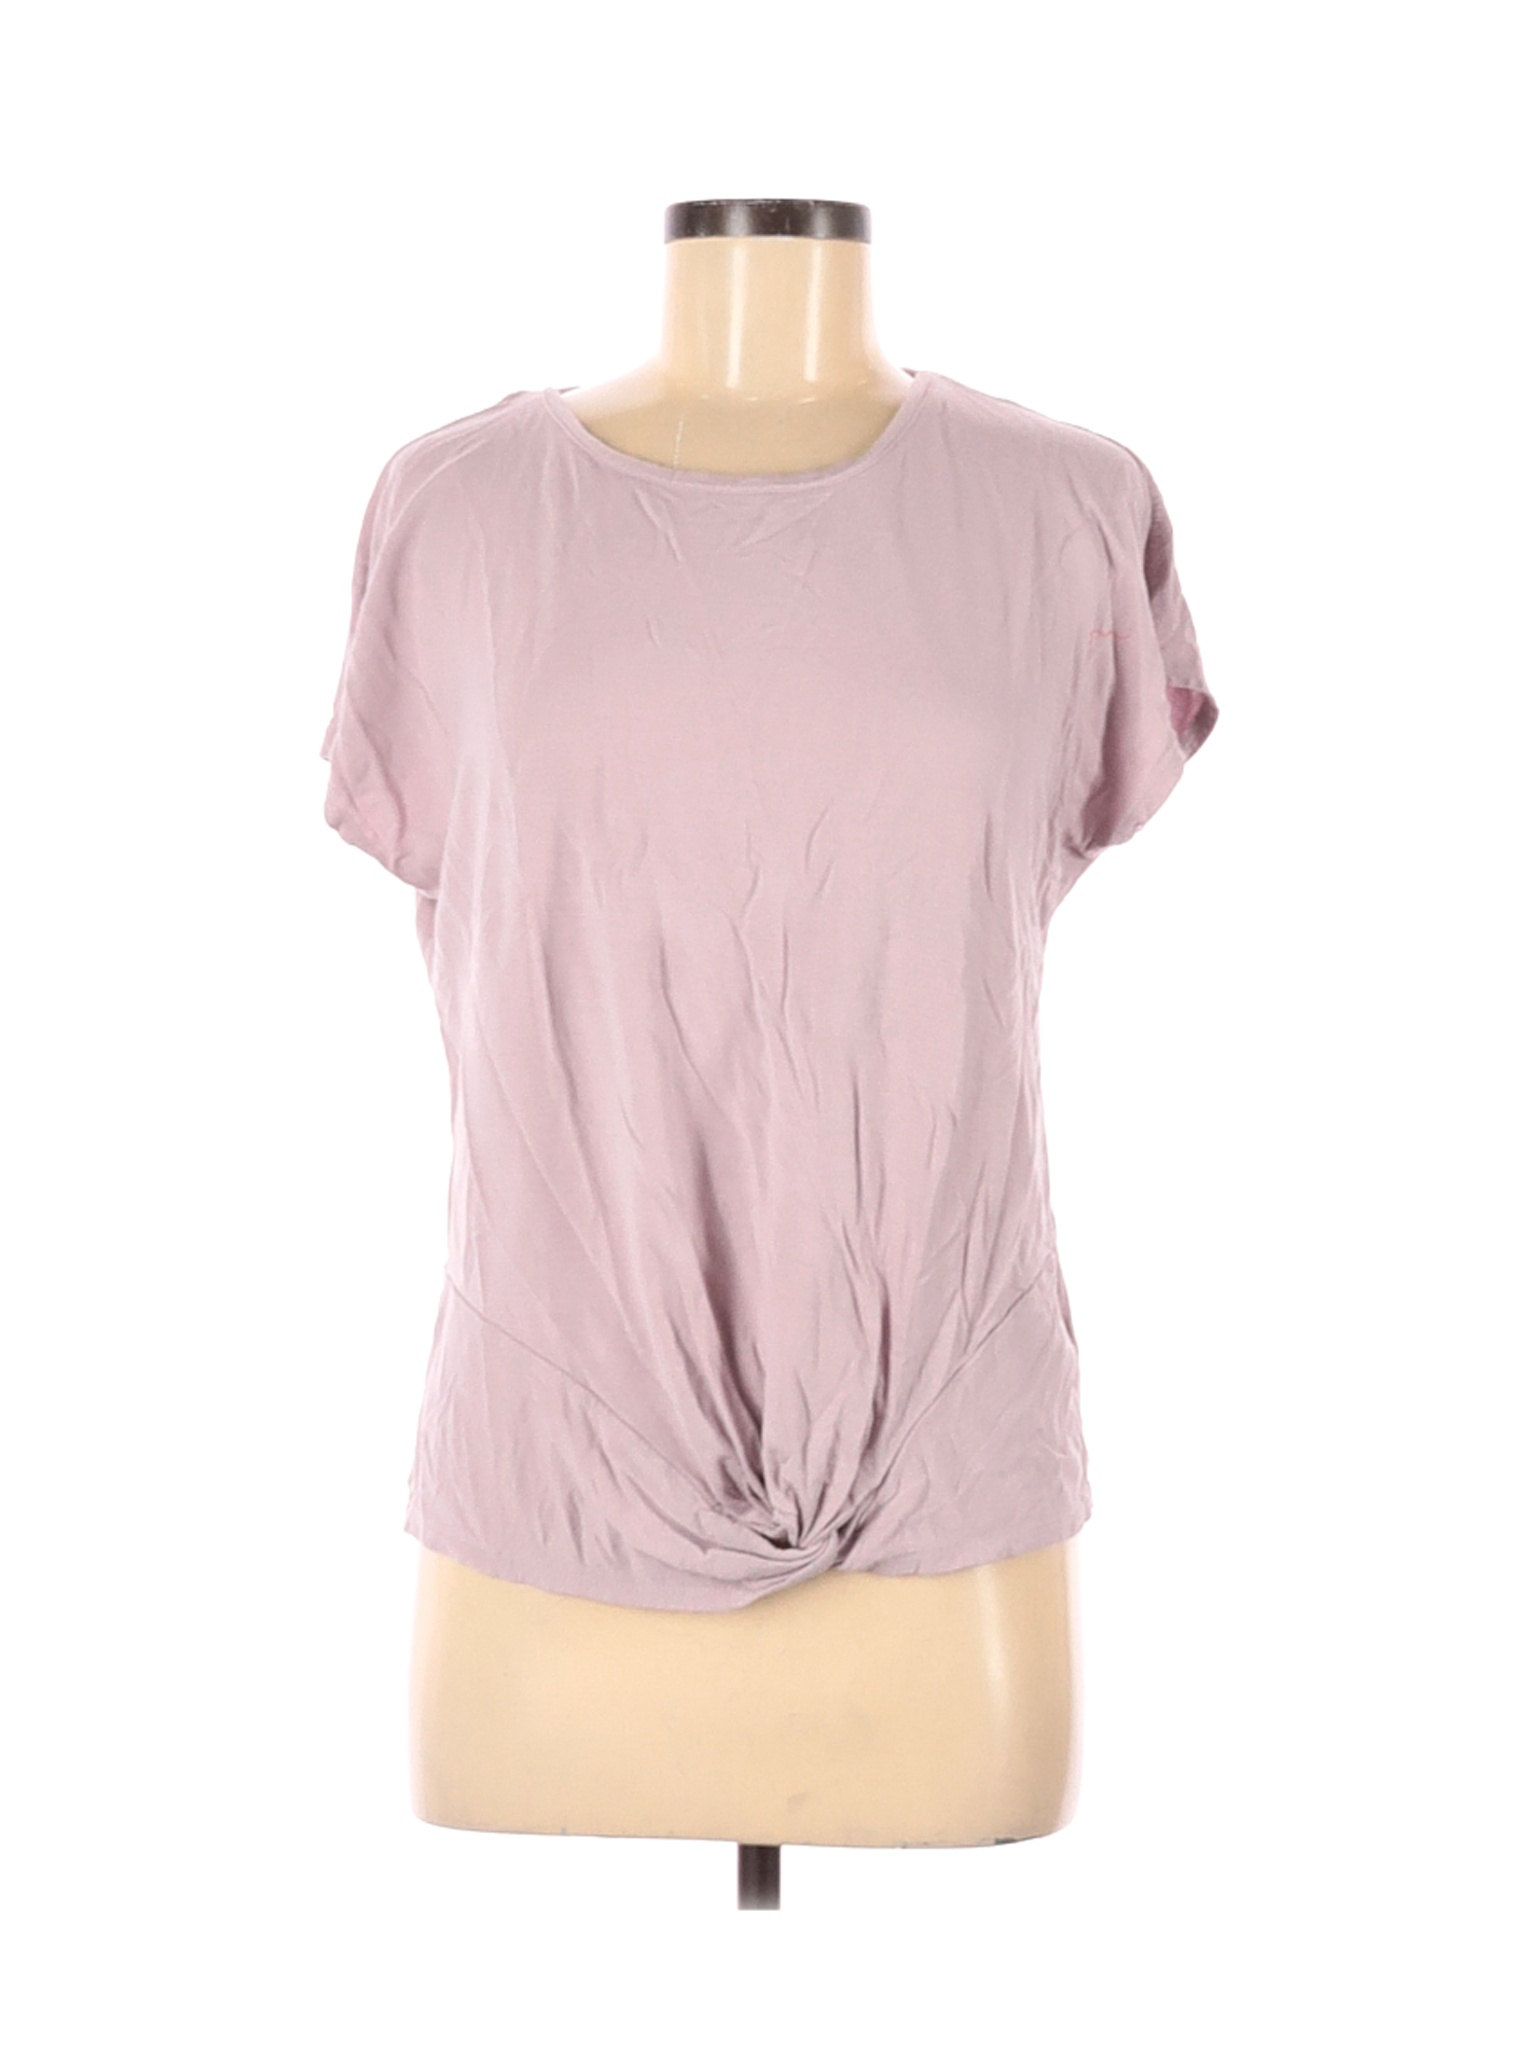 Tahari Women Pink Short Sleeve T-Shirt M | eBay